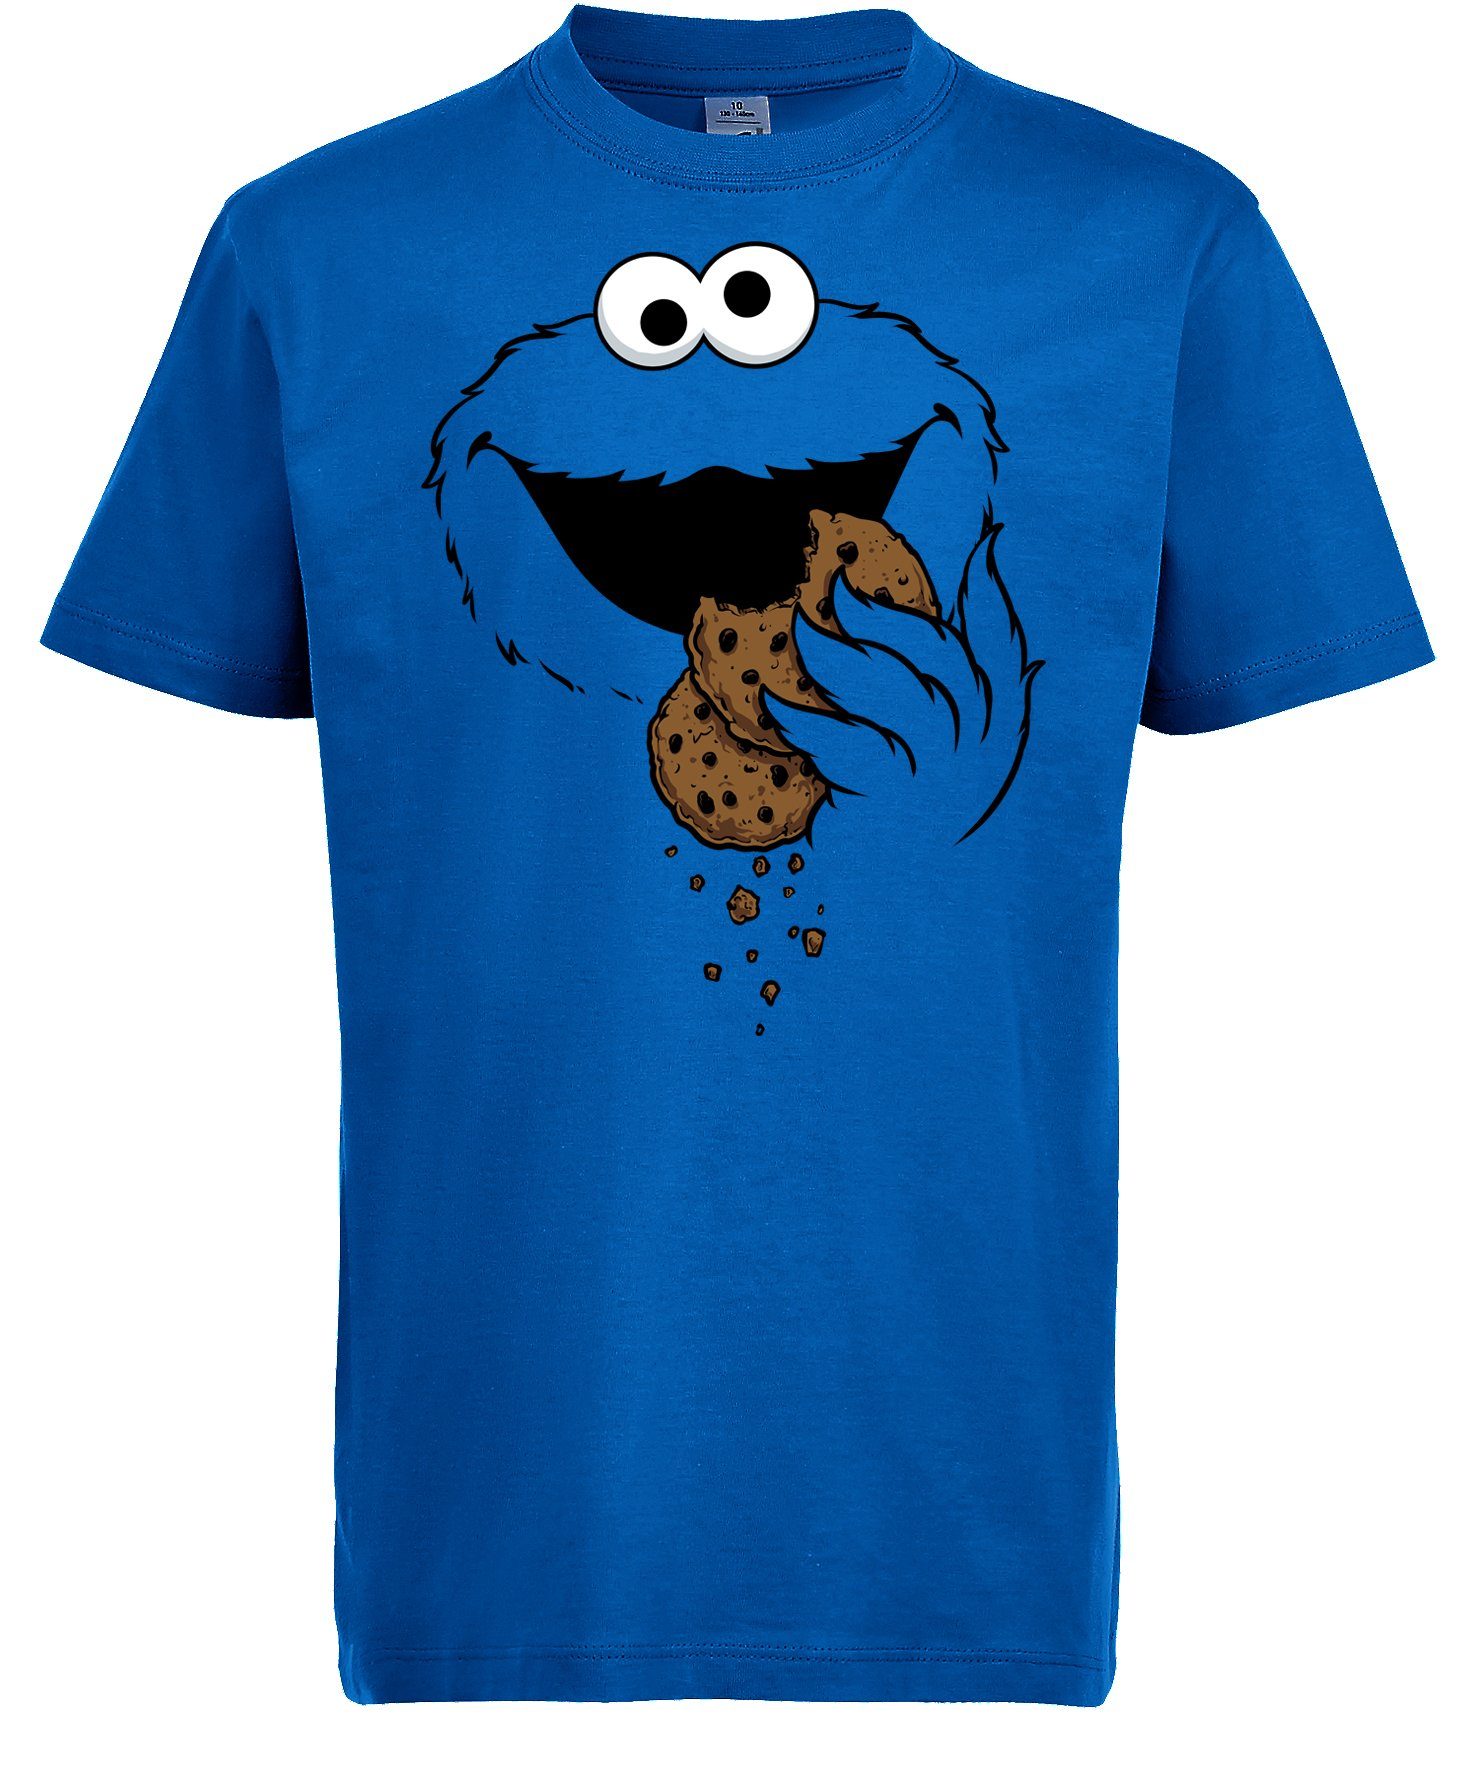 trendigem Kekse-Monster Kinder T-Shirt mit Youth für Shirt Frontprint Designz Mädchen Jungen und